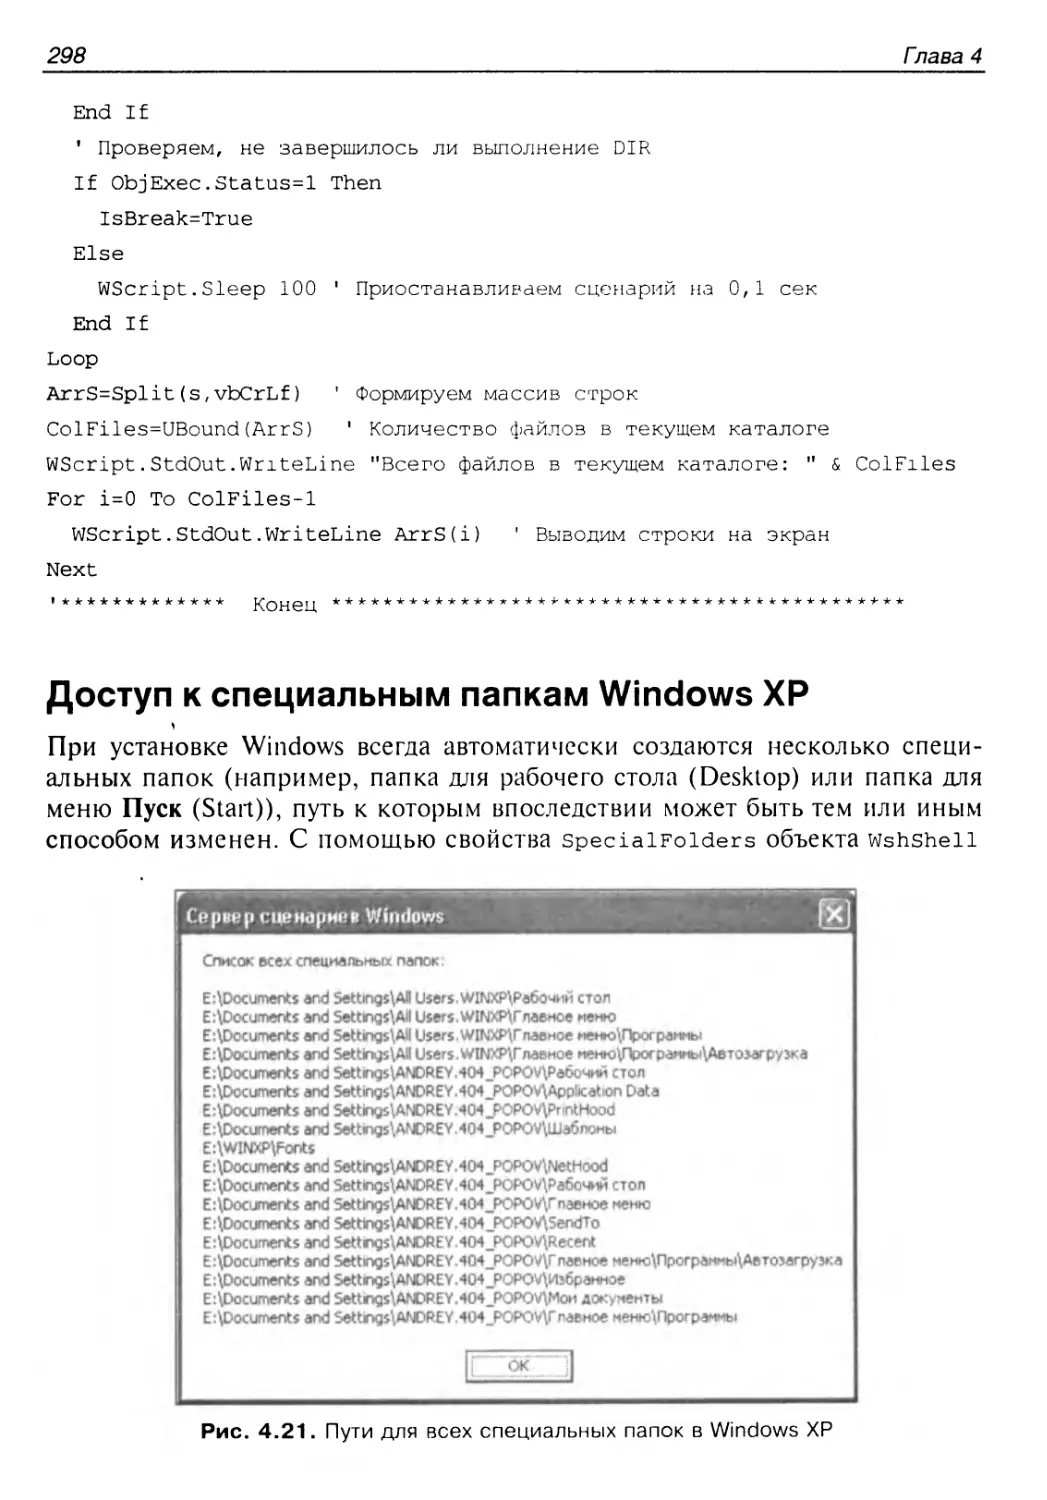 Доступ к специальным папкам Windows XP